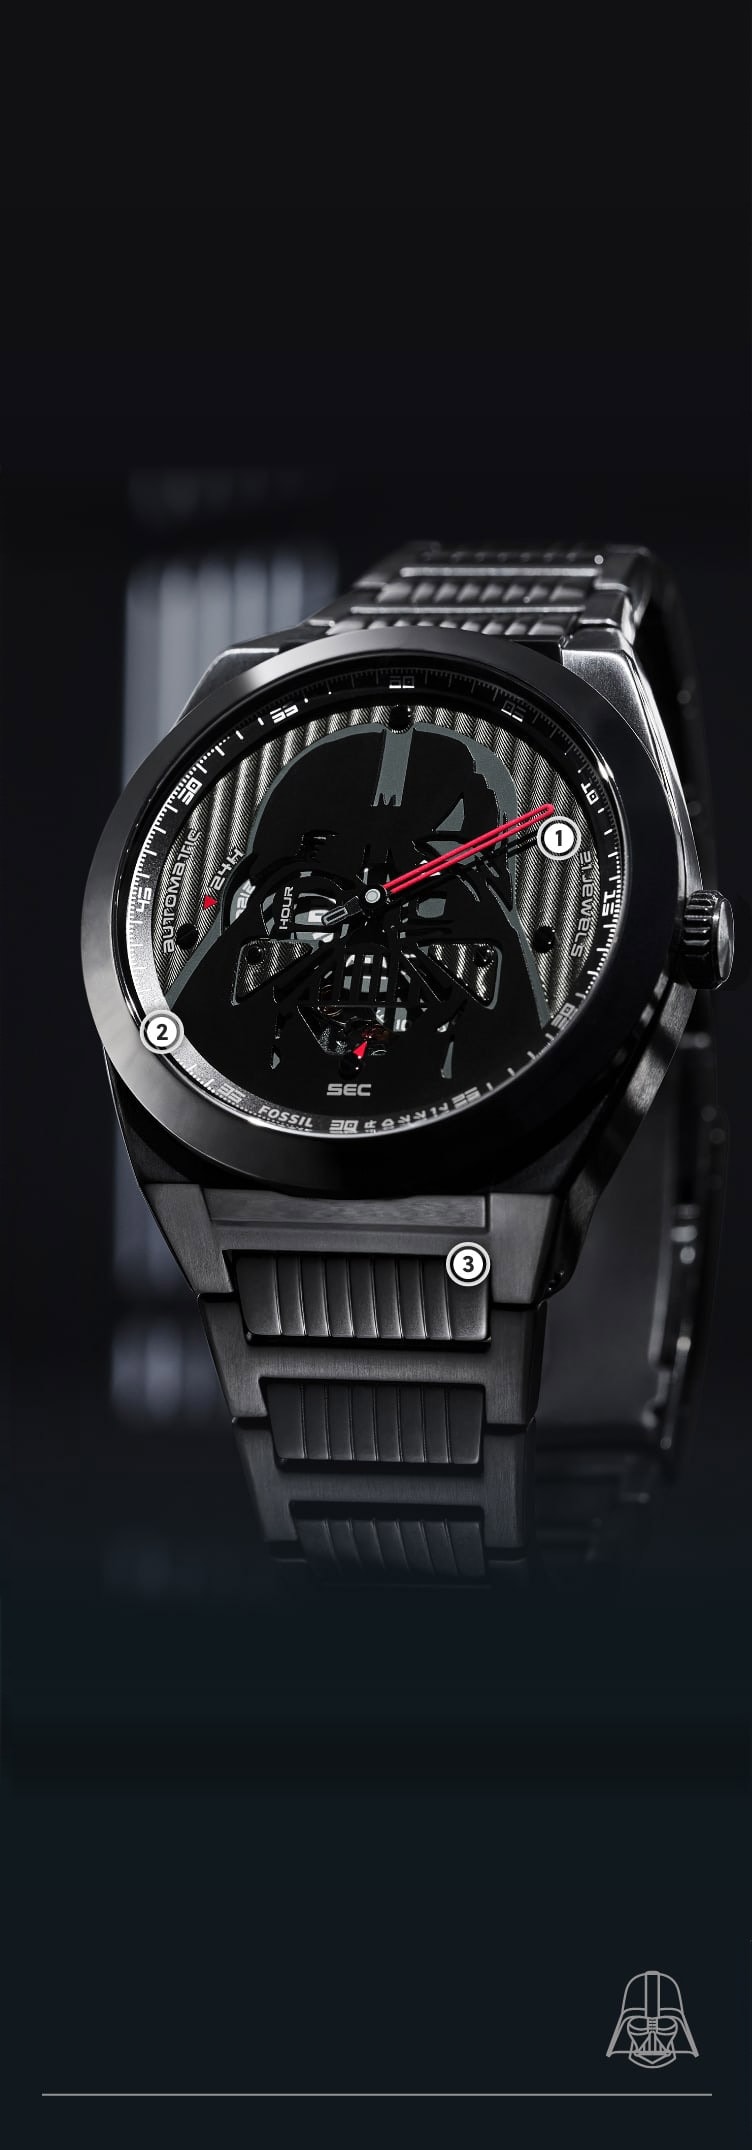 Eine Nahaufnahme einer schwarzen Uhr mit einem dimensionalen Helm von Darth Vader auf einem schwarzen, strukturierten Zifferblatt.